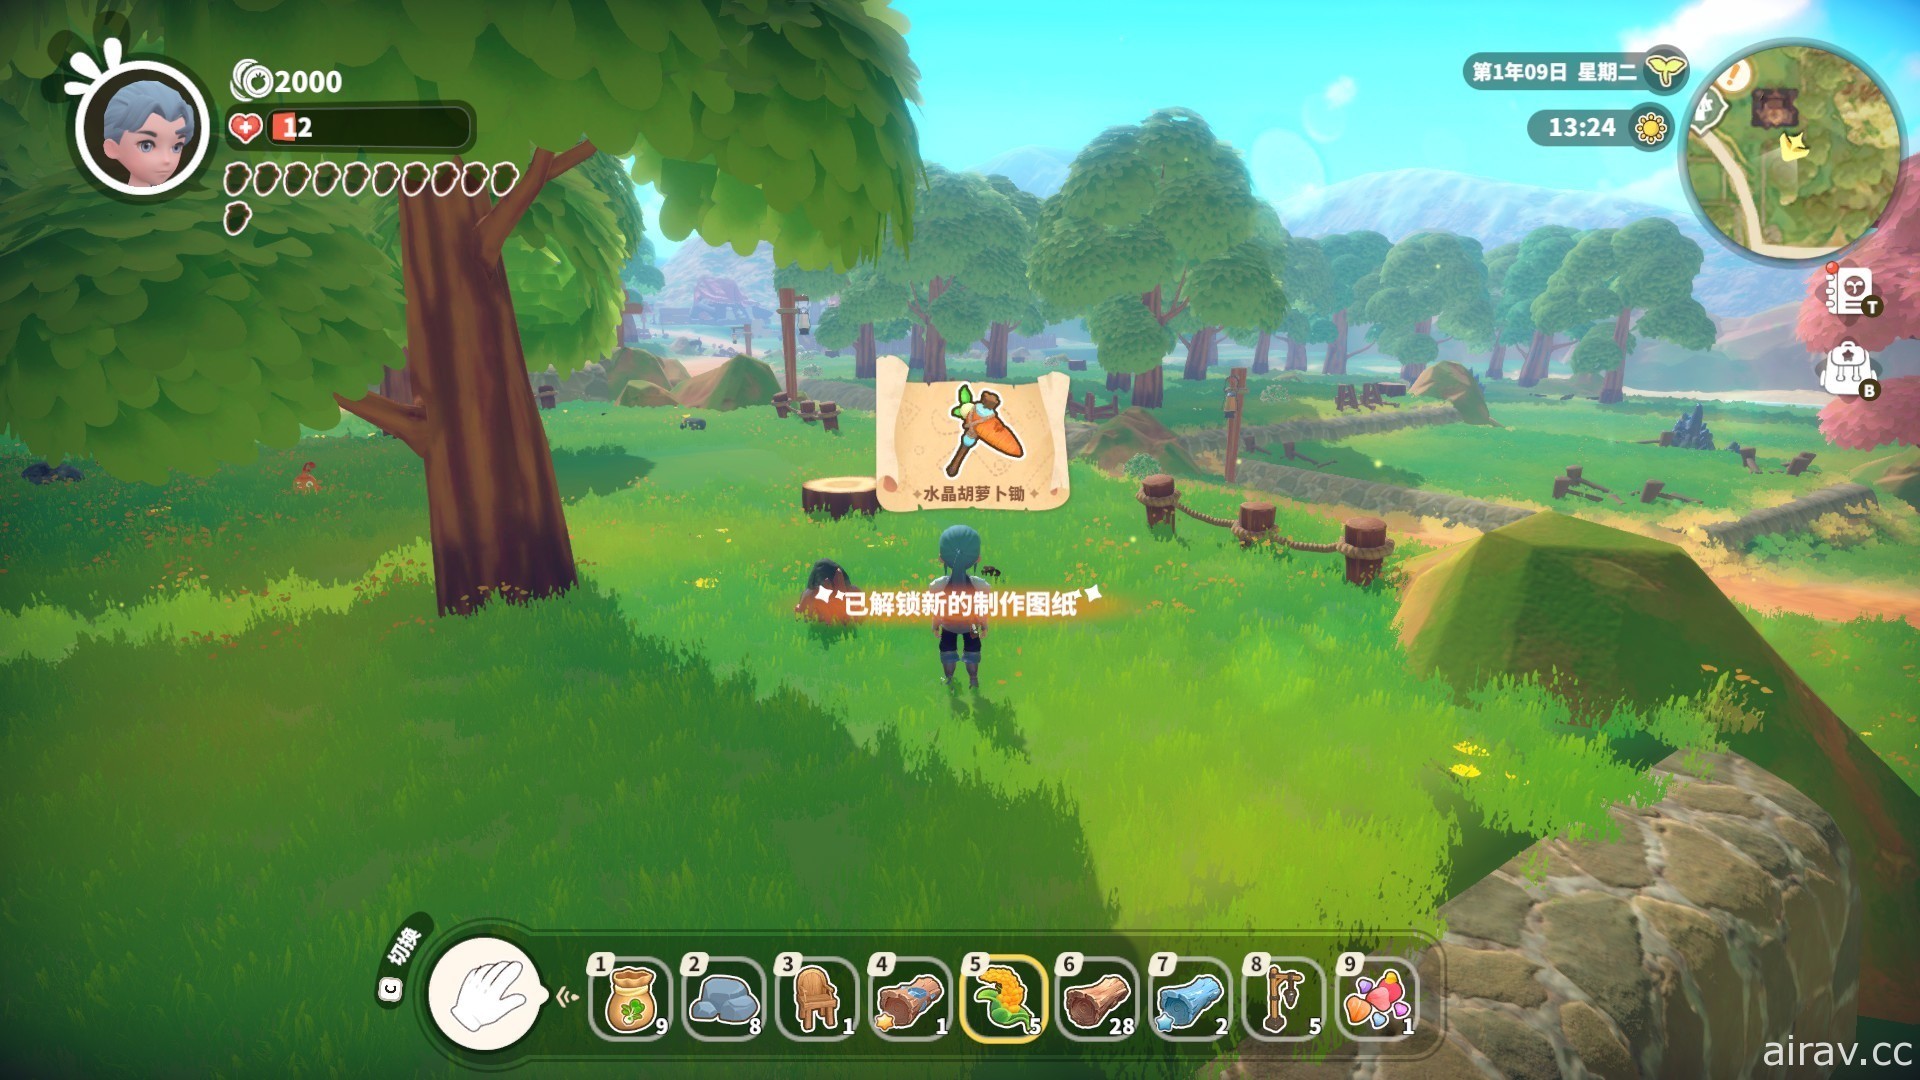 農場模擬遊戲新作《牧野之歌》釋出試玩版 預定第三季展開搶先體驗